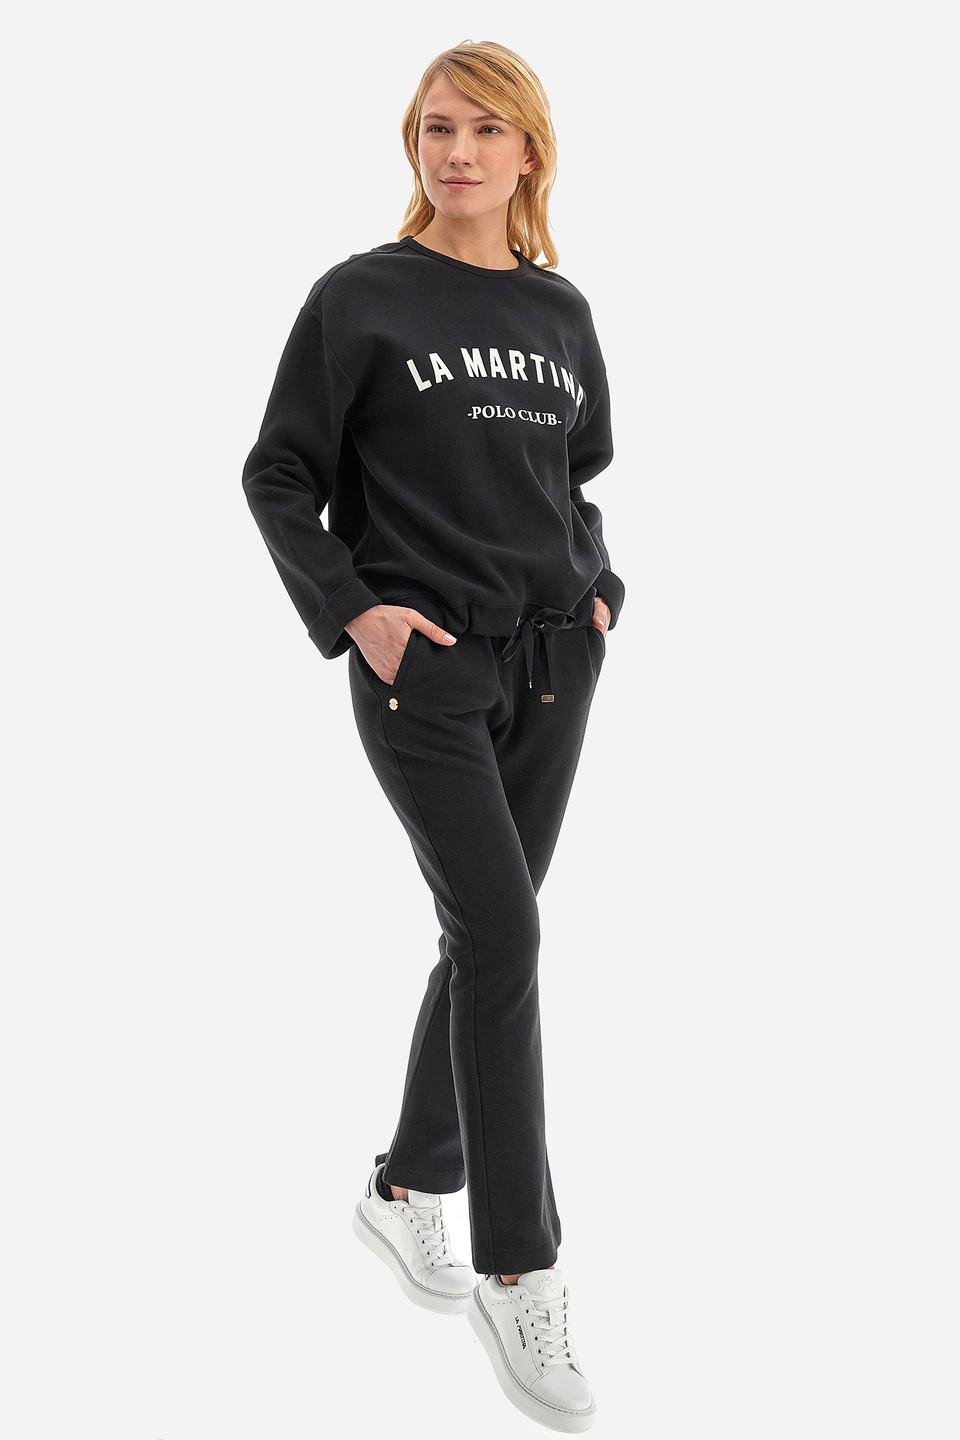 Woman sweatshirt in regular fit - Wendie | La Martina - Official Online Shop